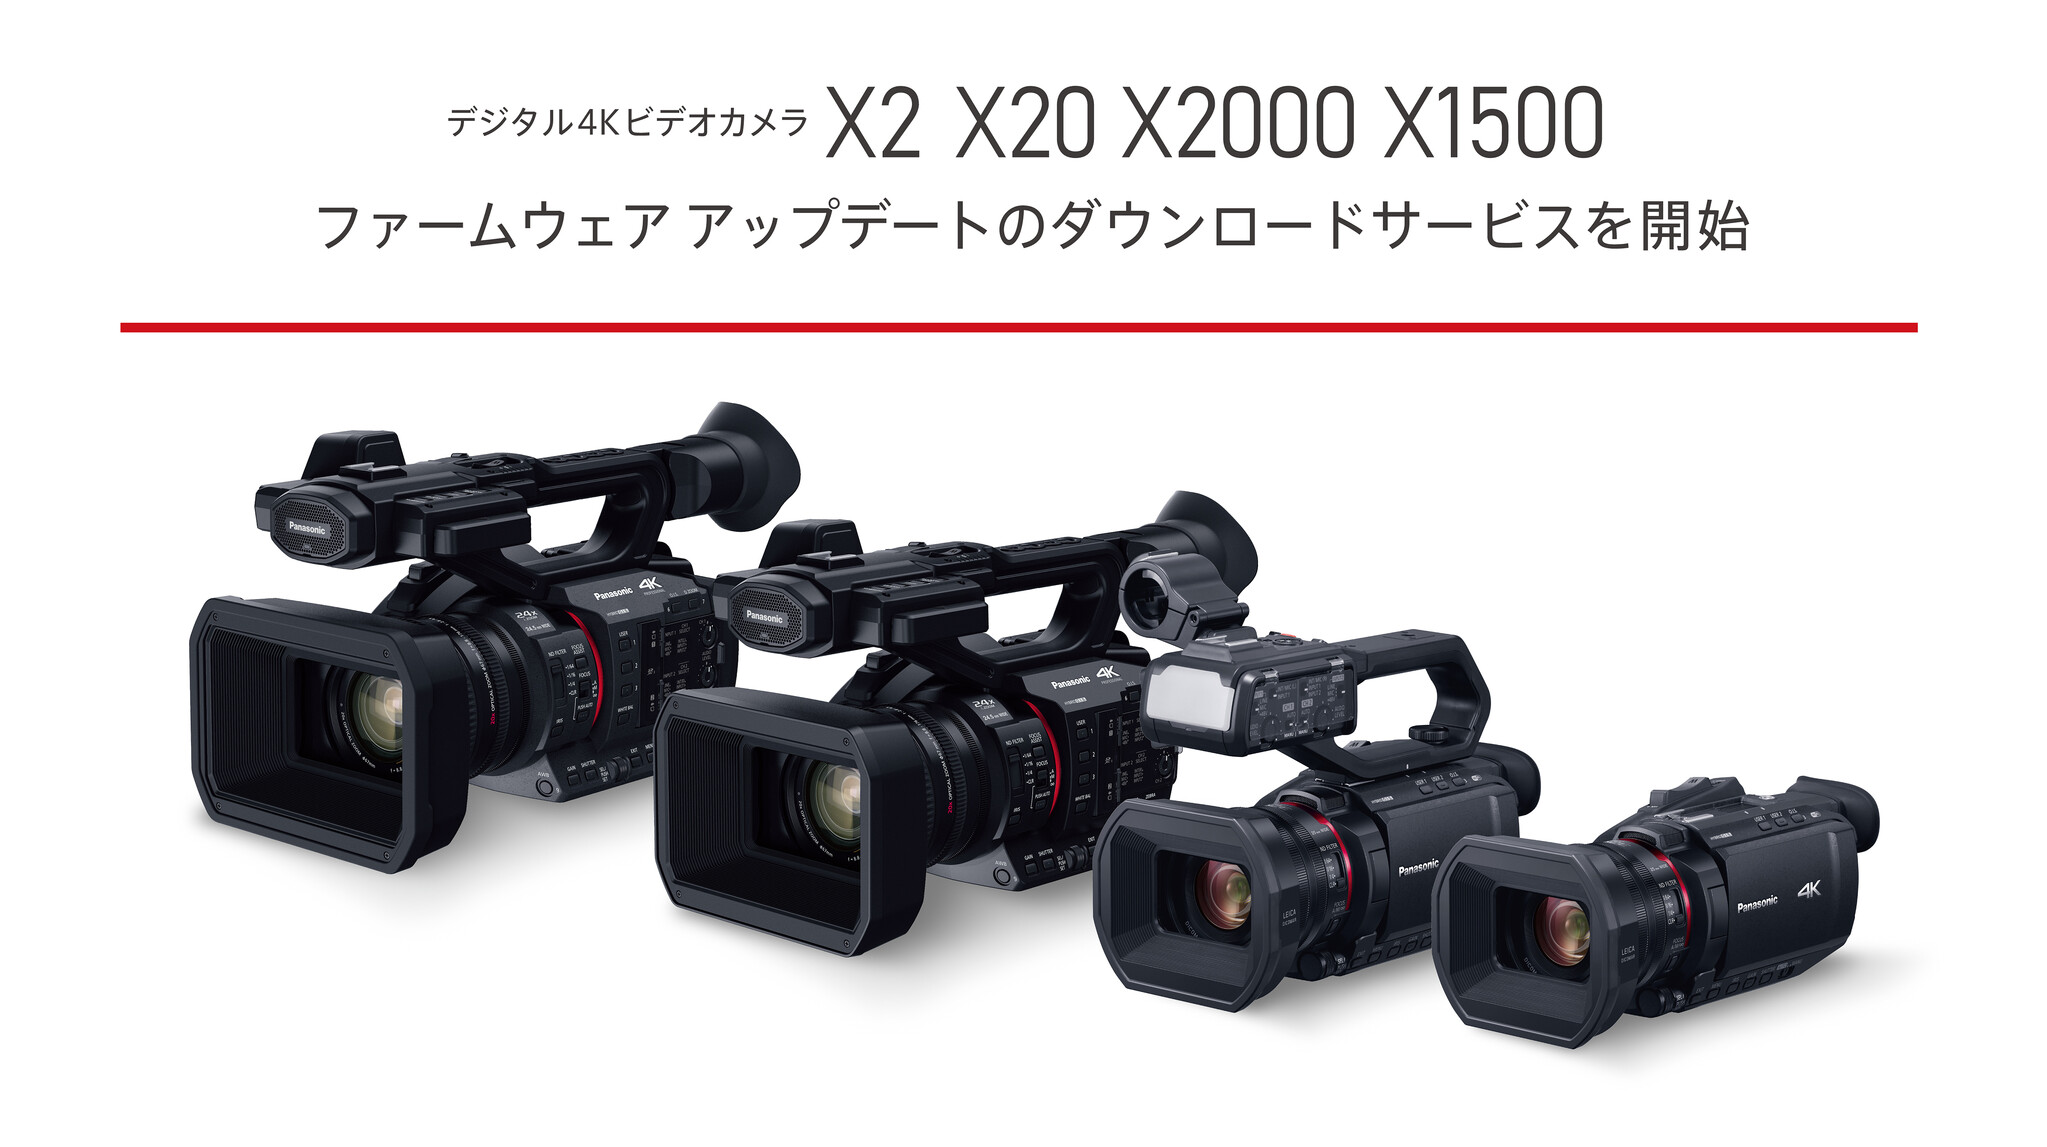 パナソニック 4K ビデオカメラ X1500 SDダブルスロット 光学24倍ズー